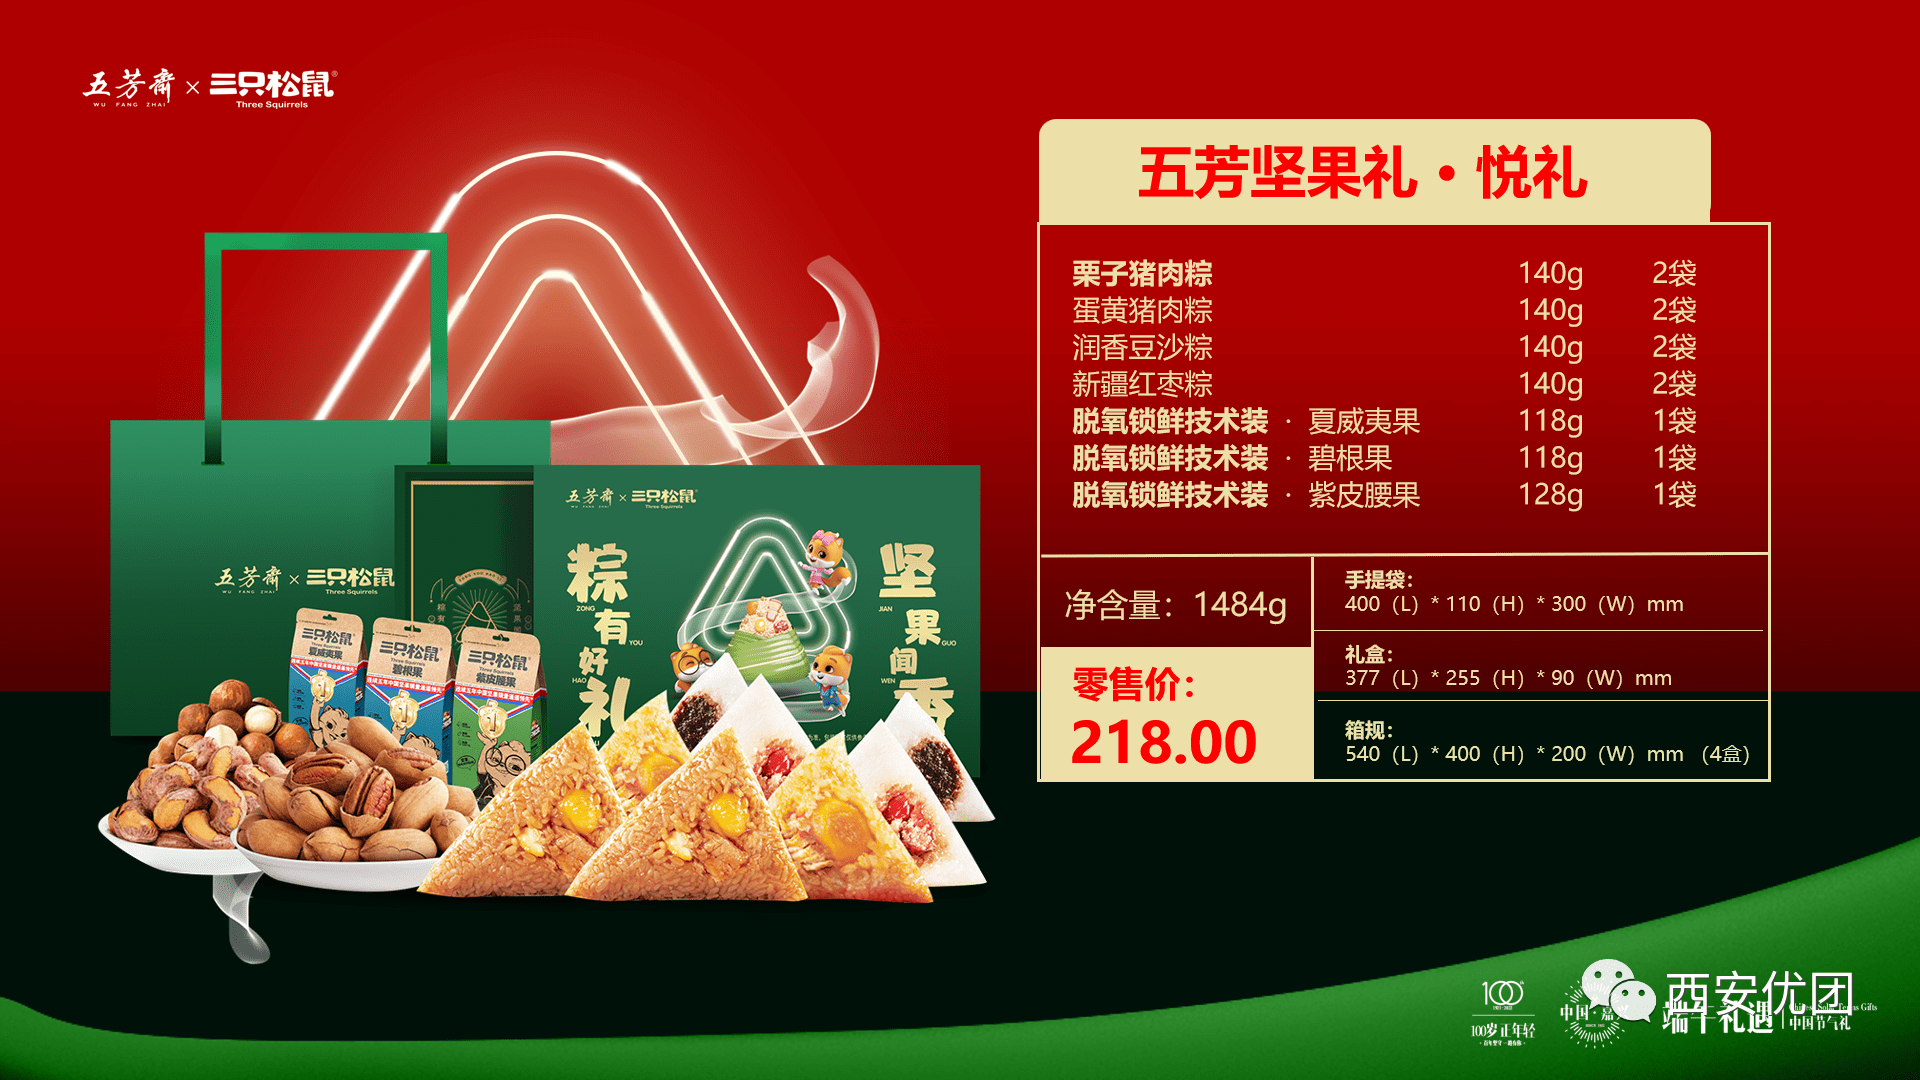 2022年端午节五芳斋粽子礼盒产品展示!